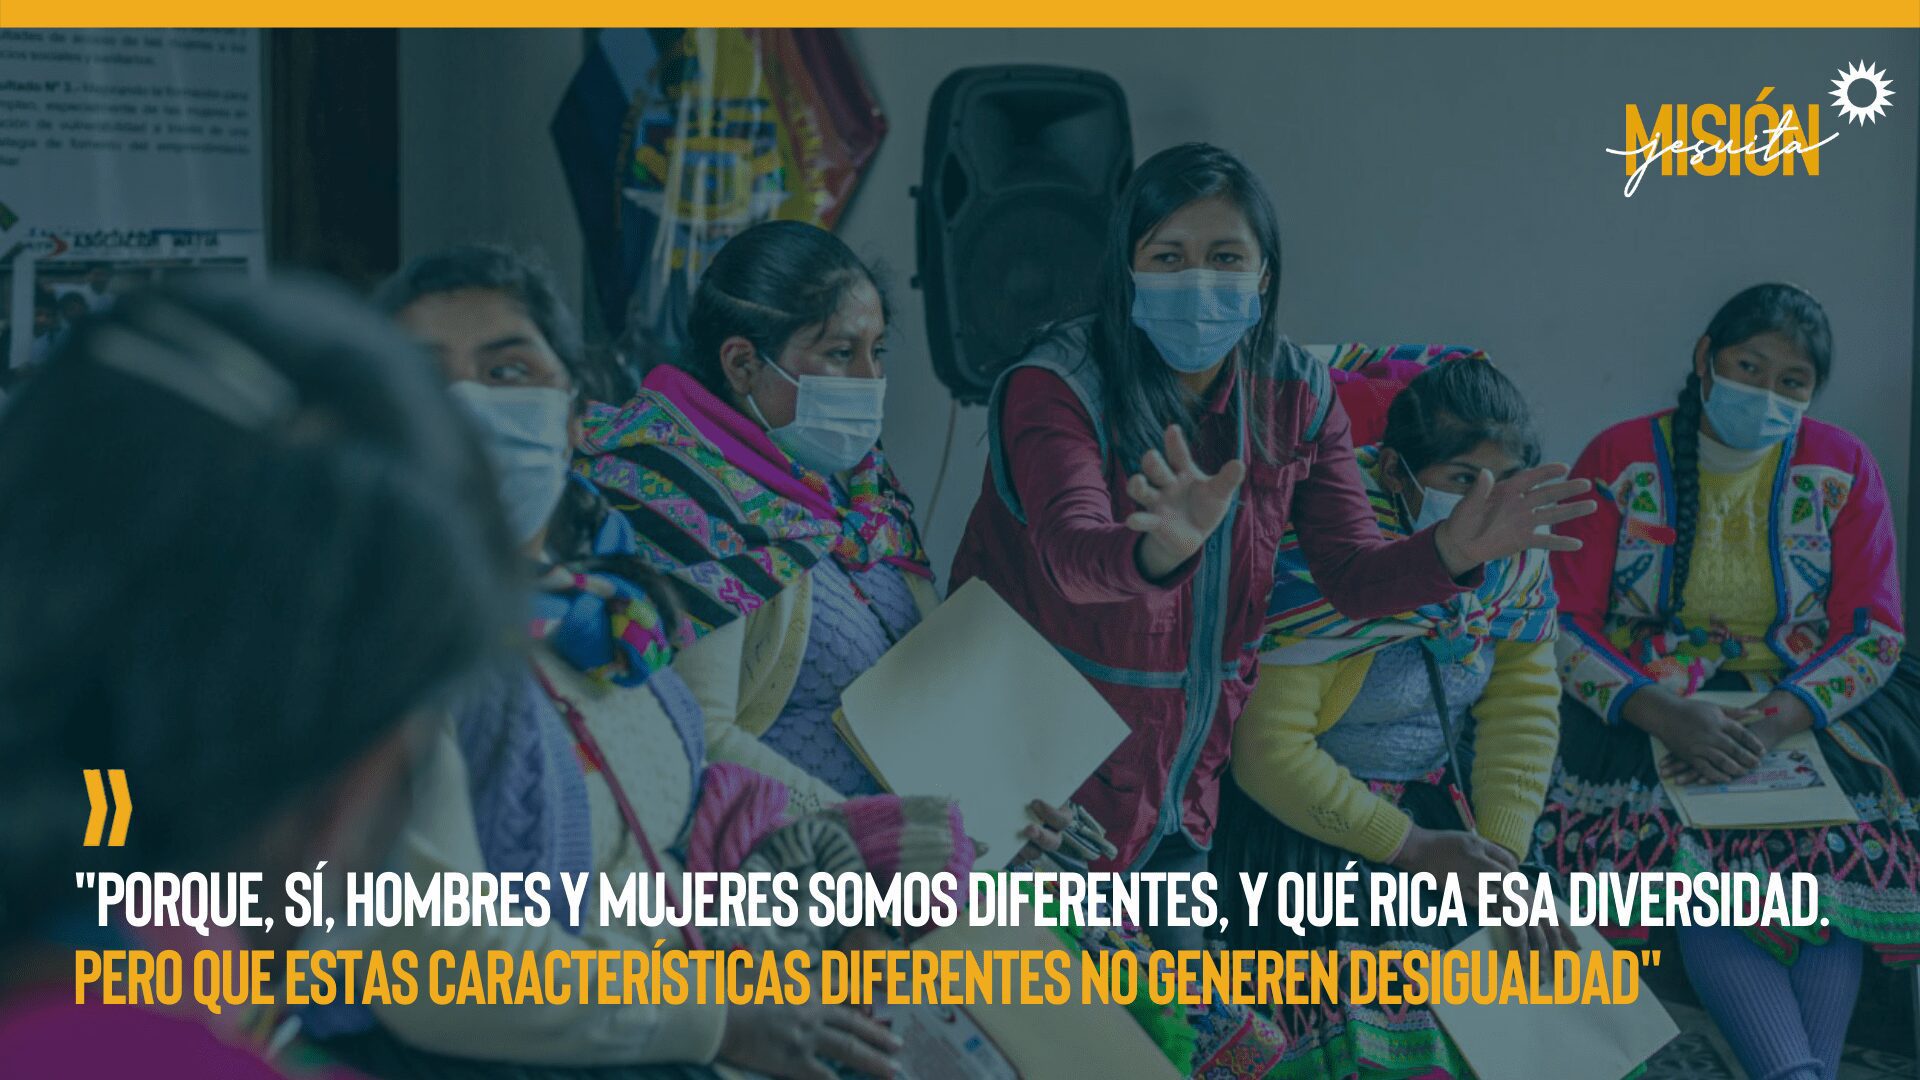 Asociación Wayra trabaja con poblaciones vulnerables de Quispicanchi en Cusco